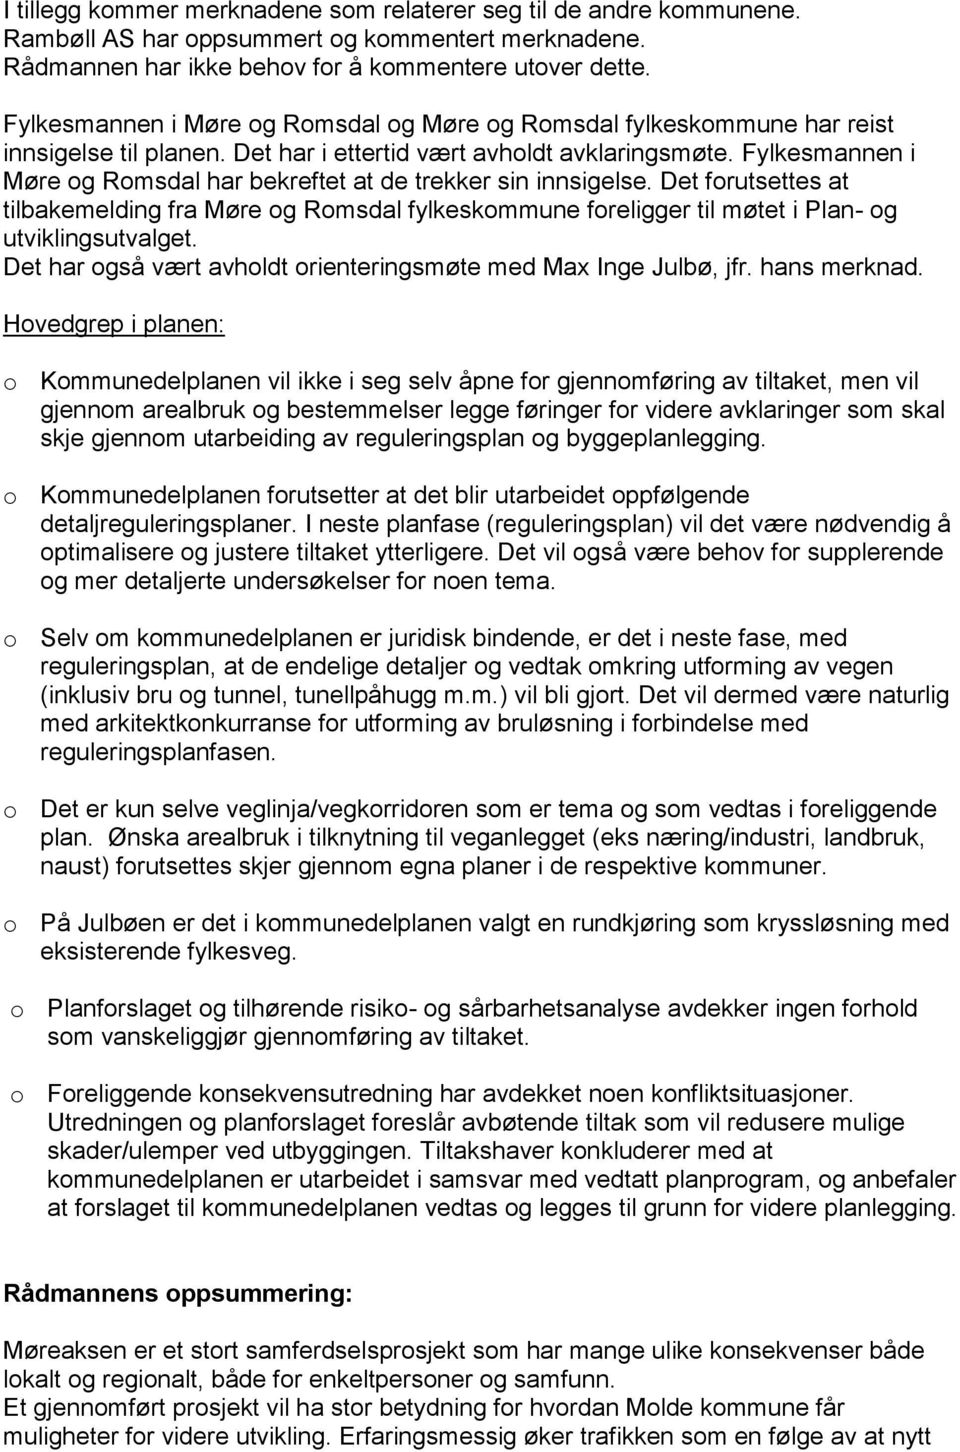 Fylkesmannen i Møre og Romsdal har bekreftet at de trekker sin innsigelse. Det forutsettes at tilbakemelding fra Møre og Romsdal fylkeskommune foreligger til møtet i Plan- og utviklingsutvalget.